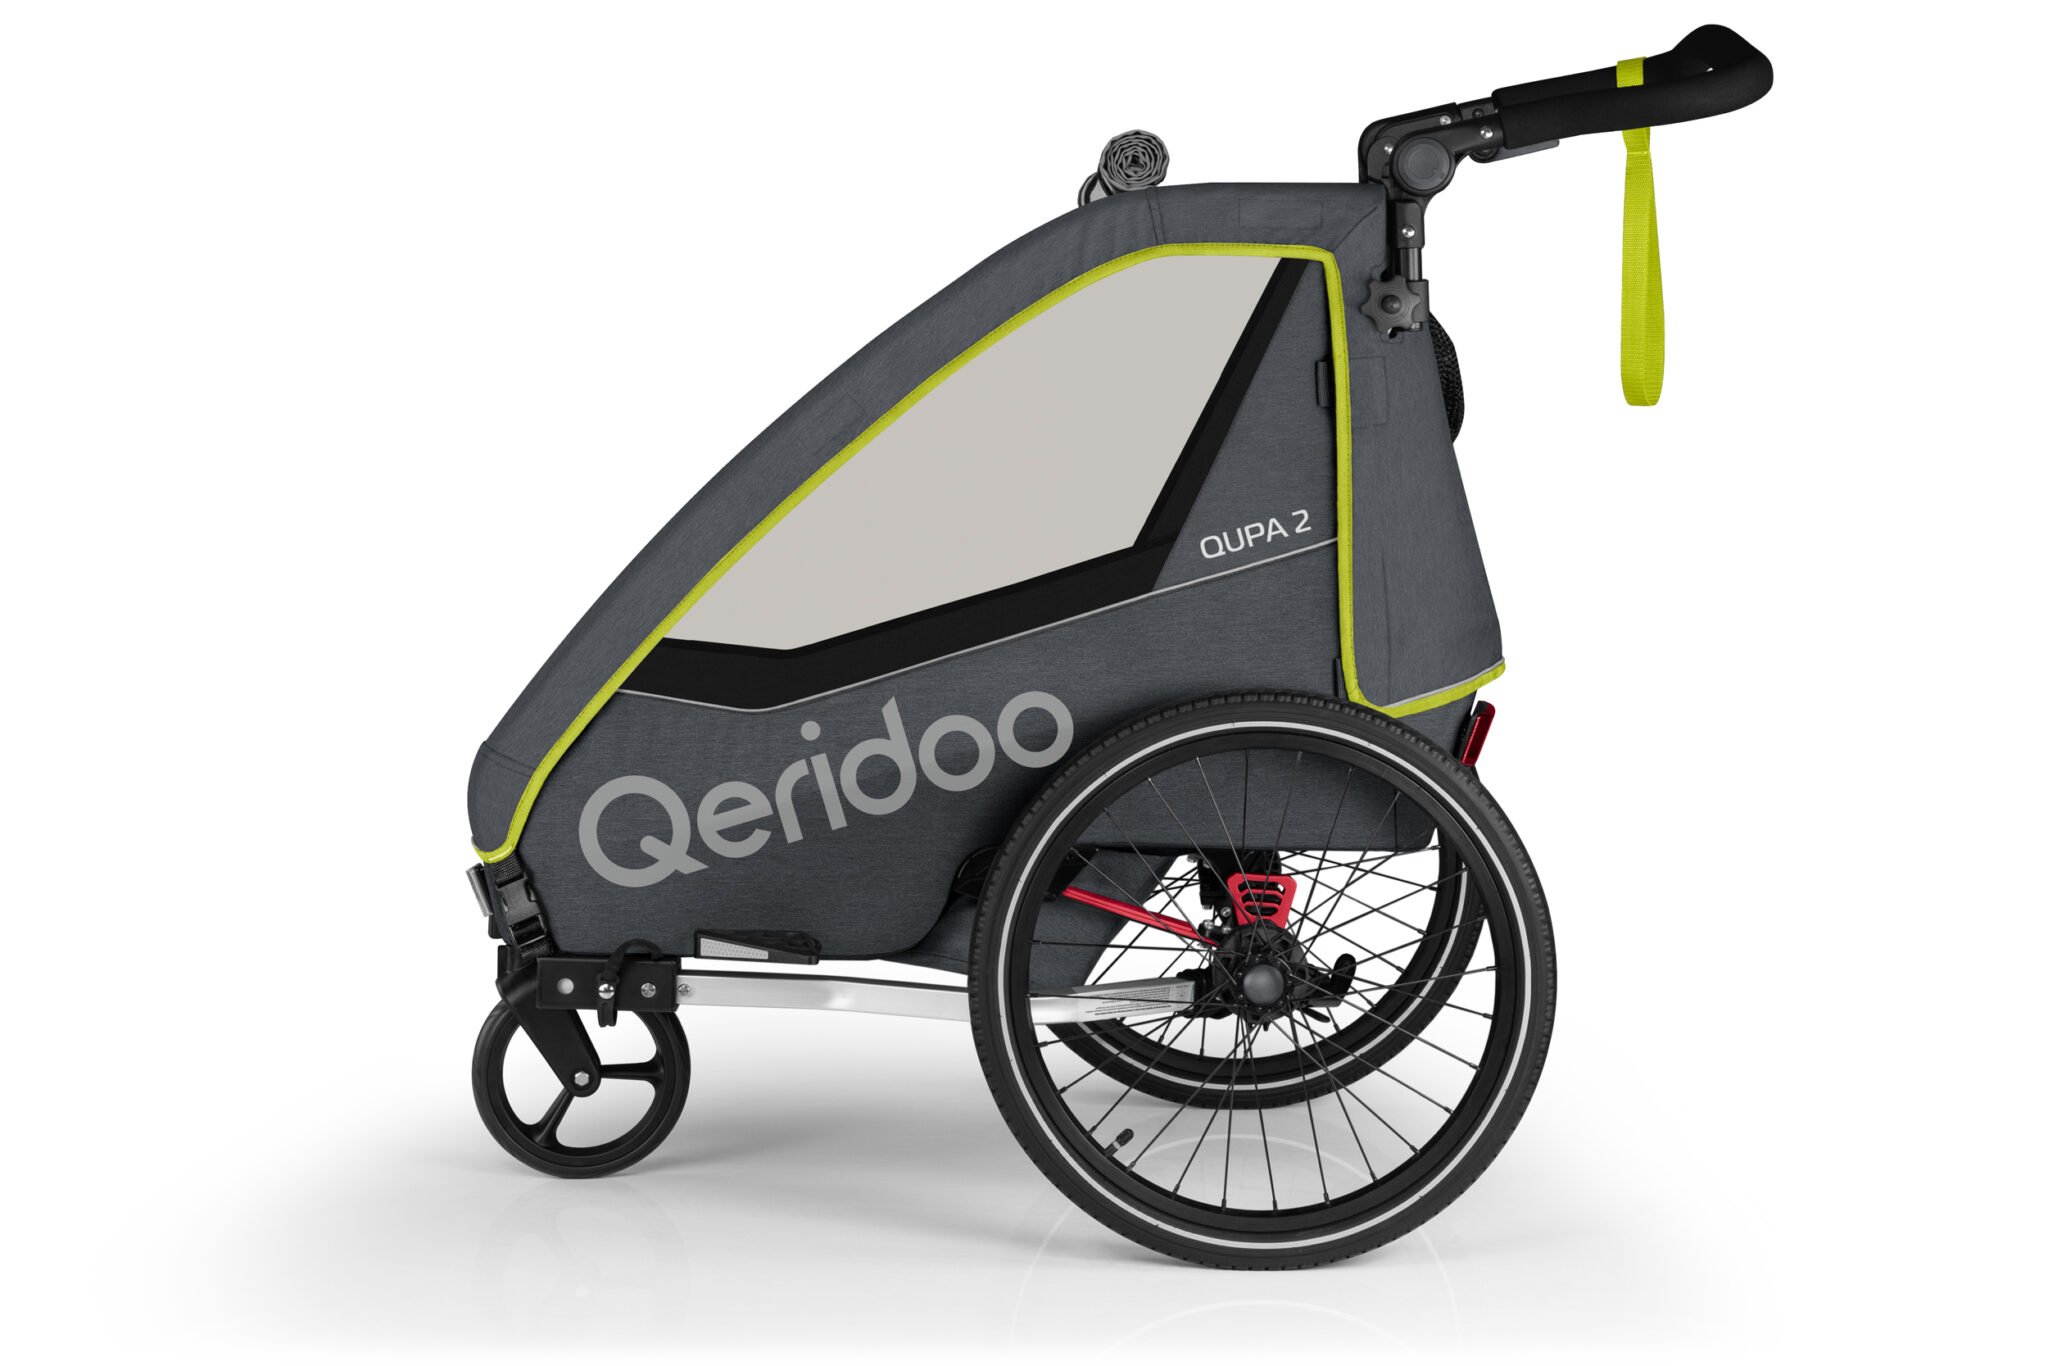 Produktbild von Qeridoo Qupa 2 Lime Q-QUP2-22-LI - Kinderfahrradanhänger mit Federung, Hand-Parkbremse und Buggyrad